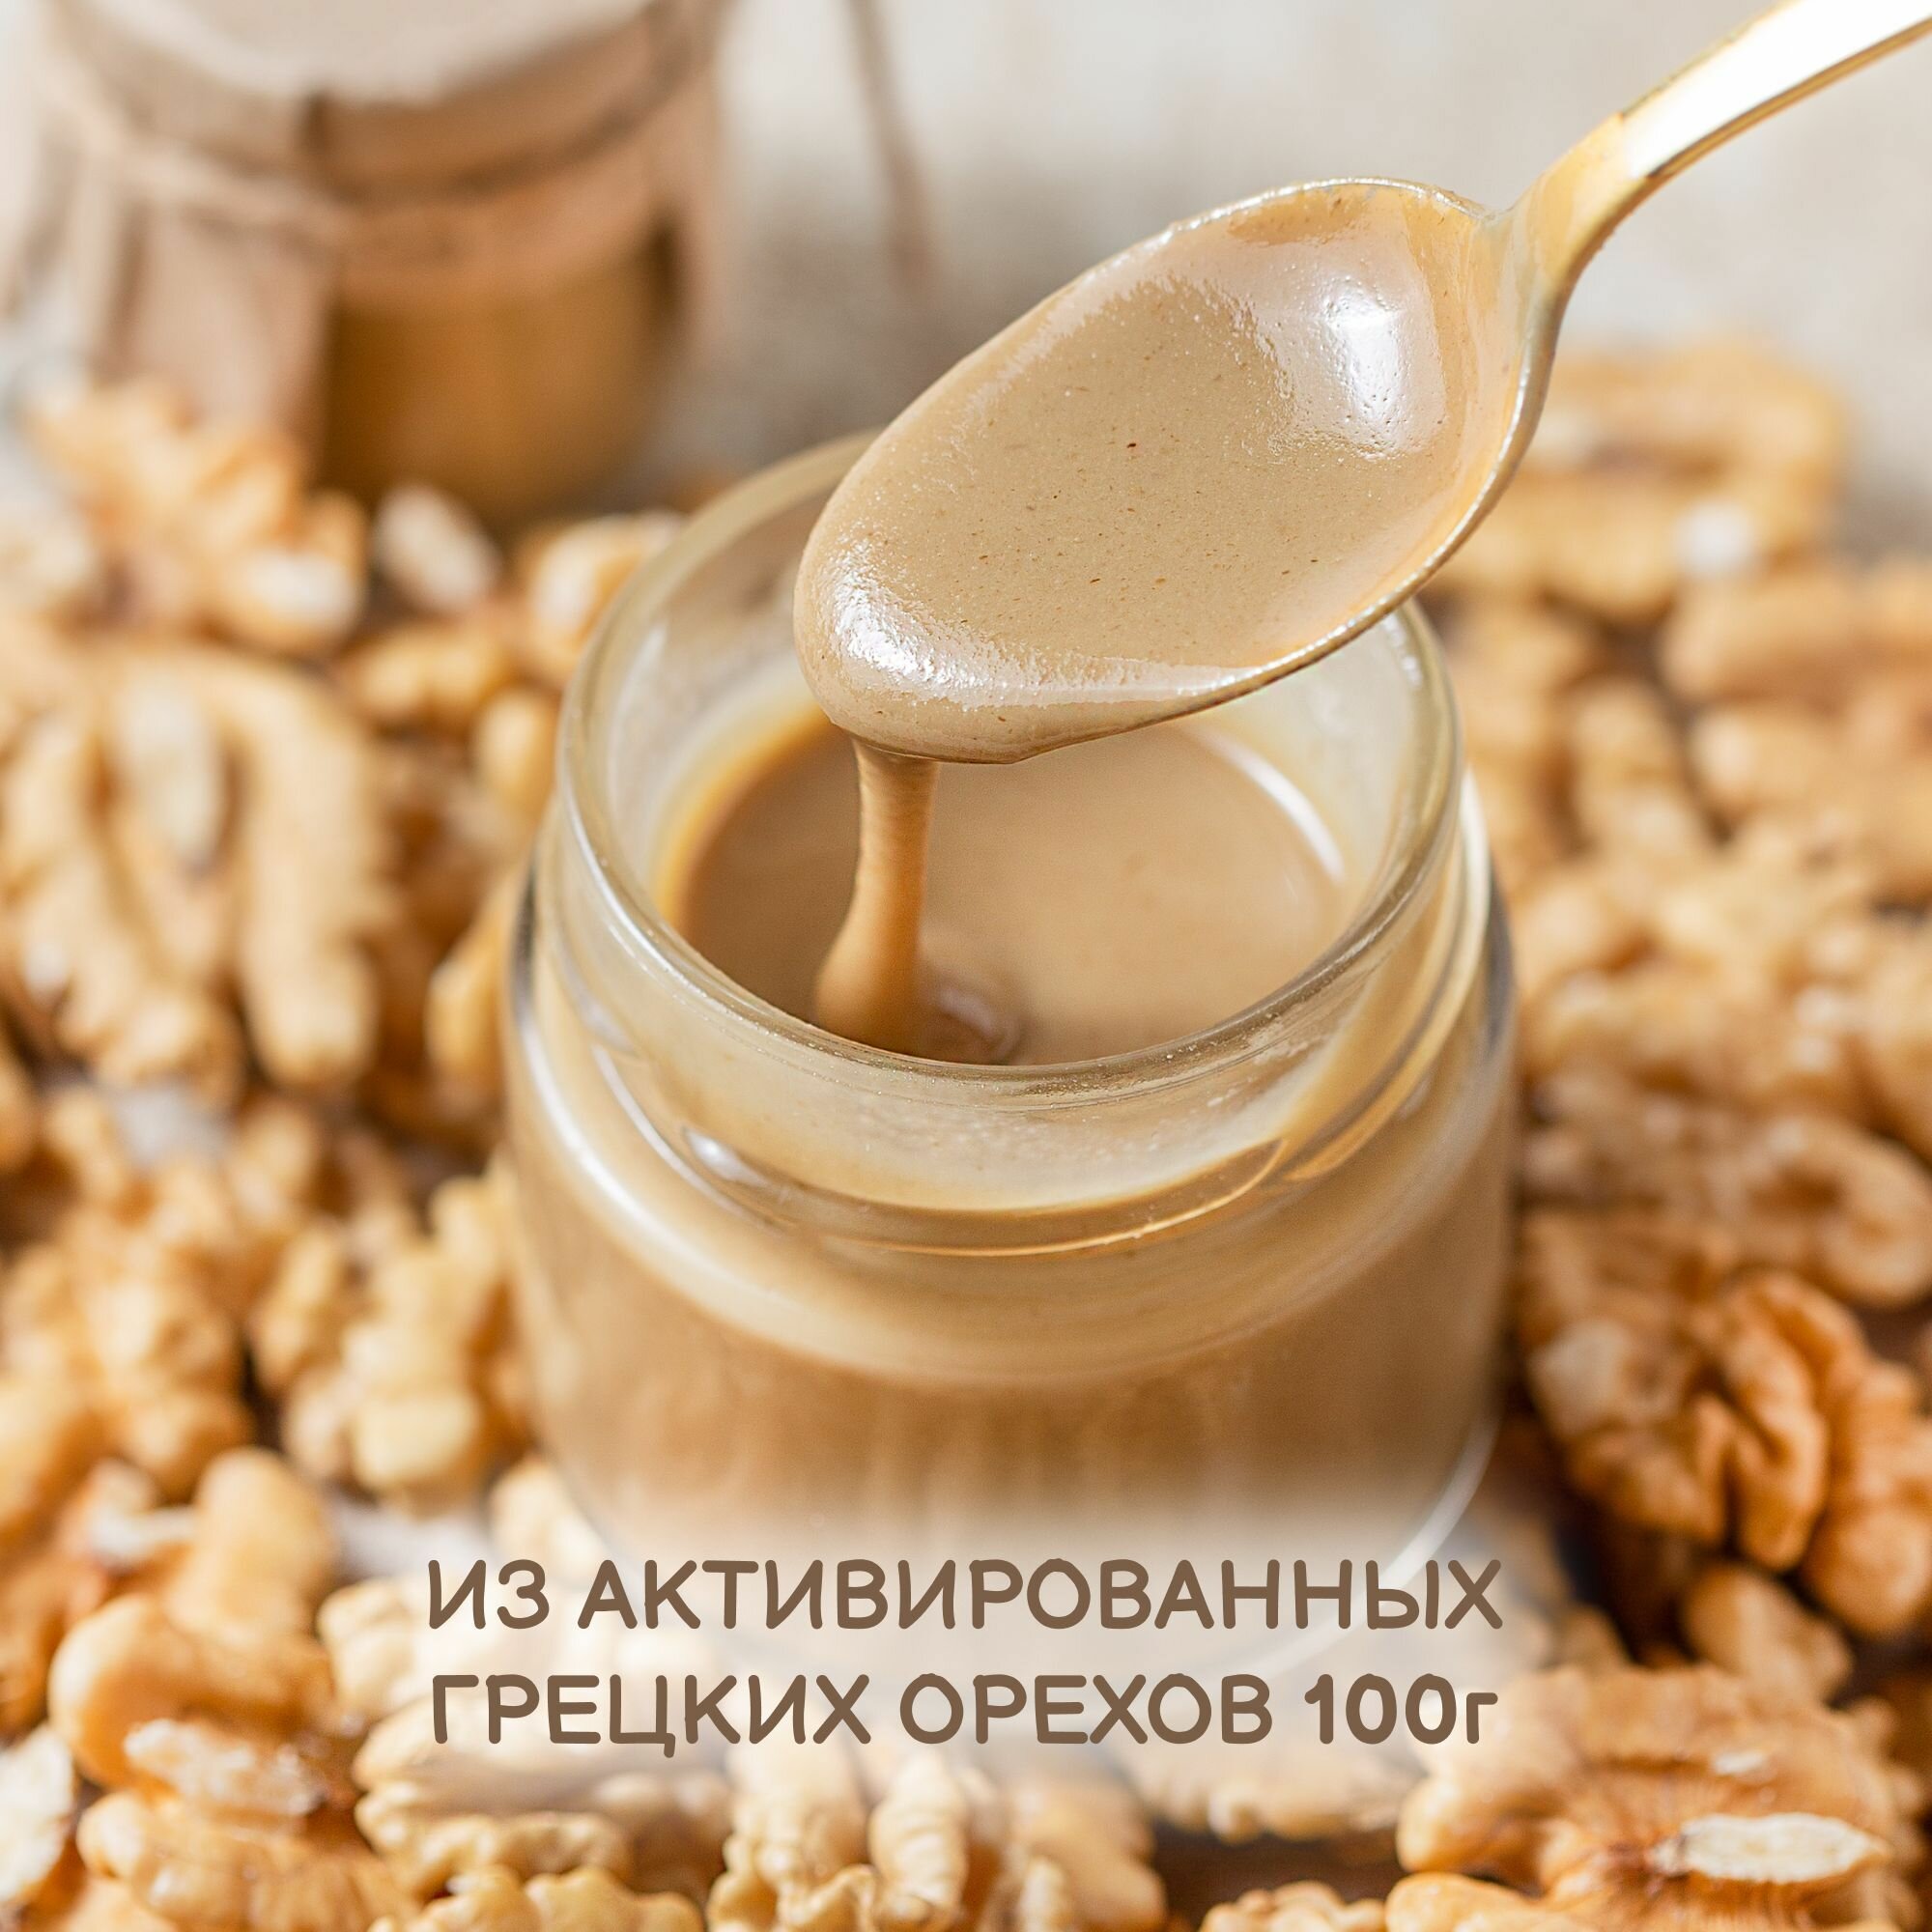 Урбеч из активированных грецких орехов "благоешка", 100% натуральный без сахара, 100 г